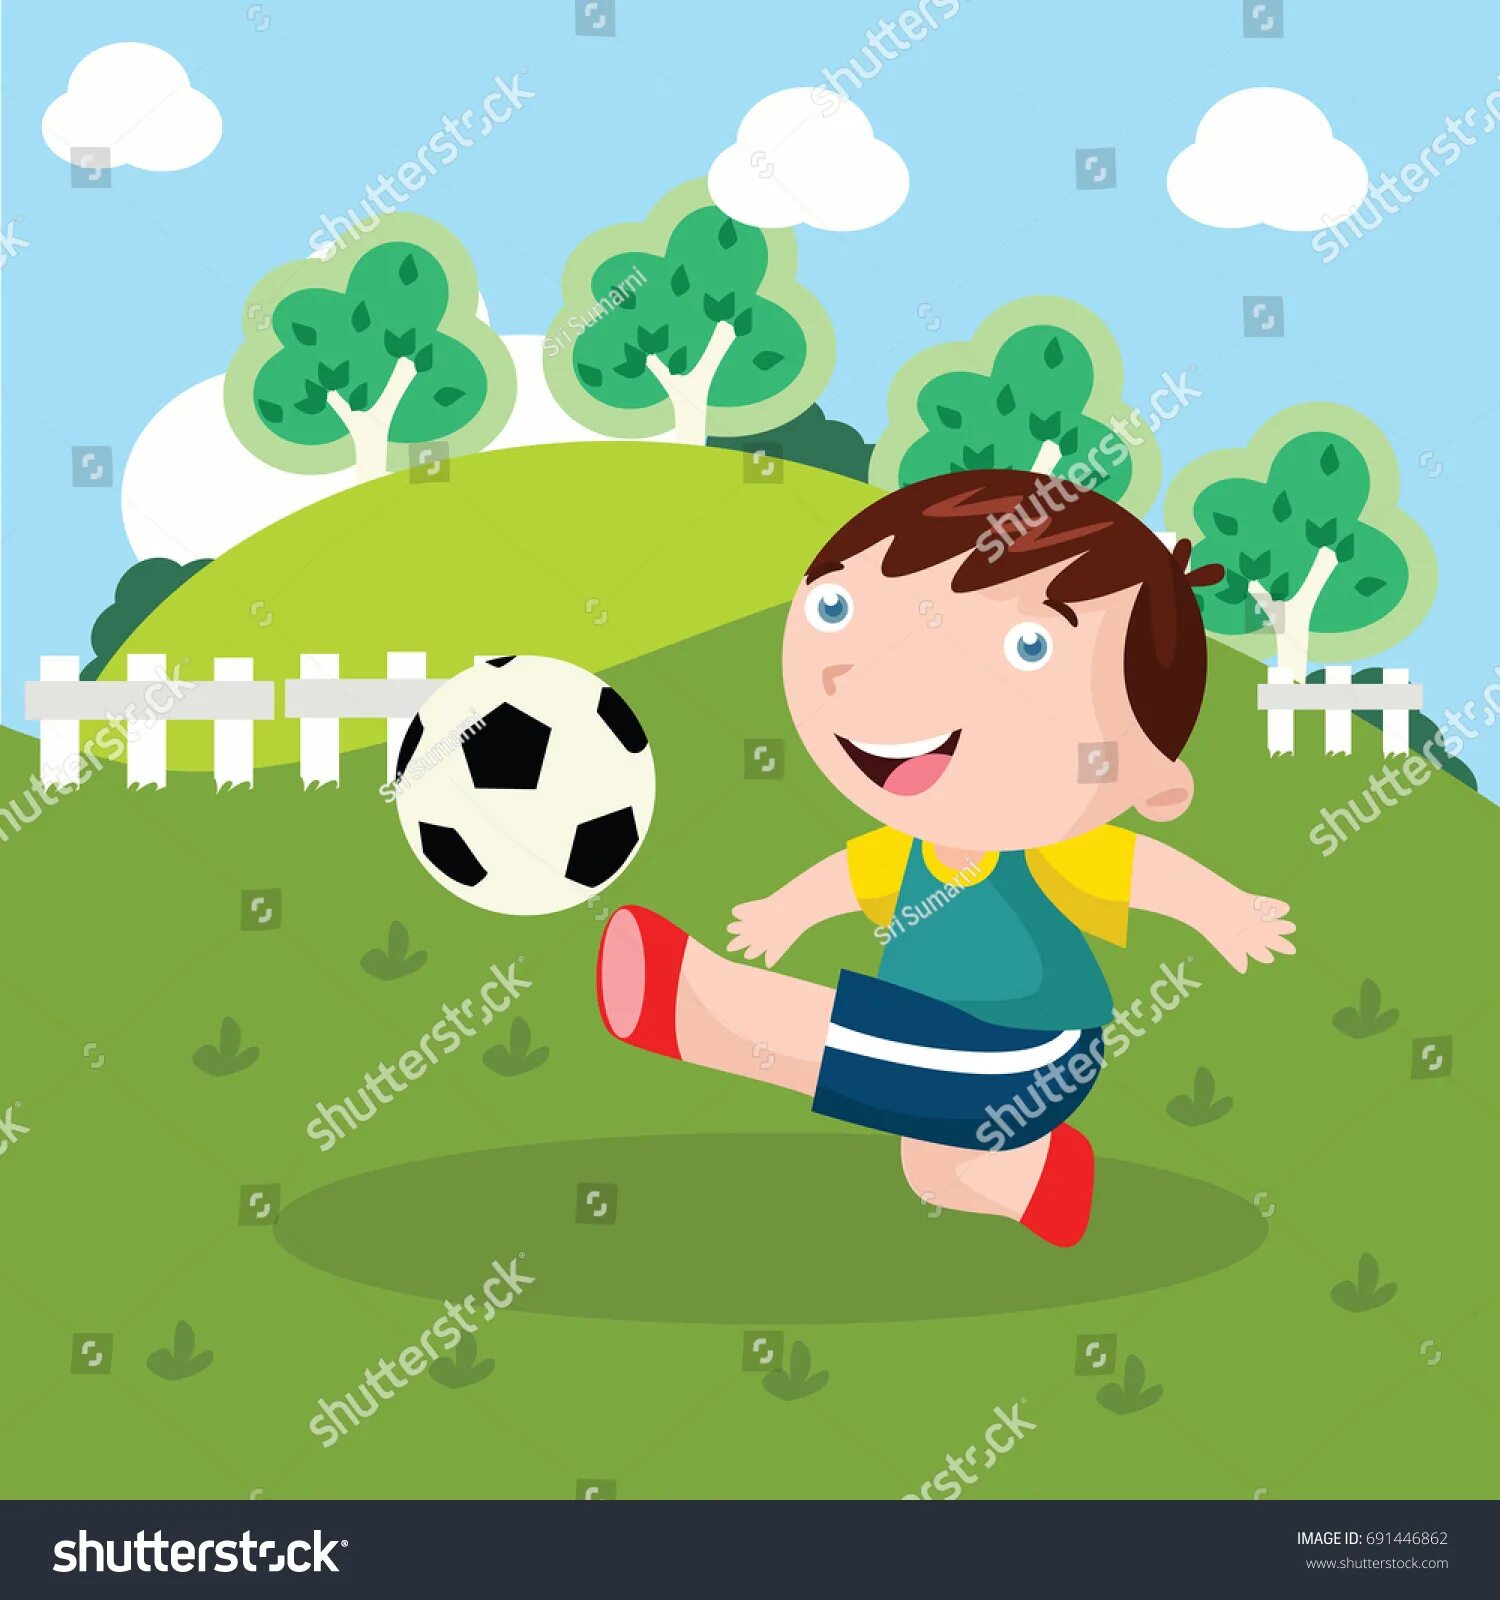 Футбол мультяшный. Играющие в футбол дети иллюстрация. Футбол картины для детей. Игра в футбол мультяшная. I play soccer